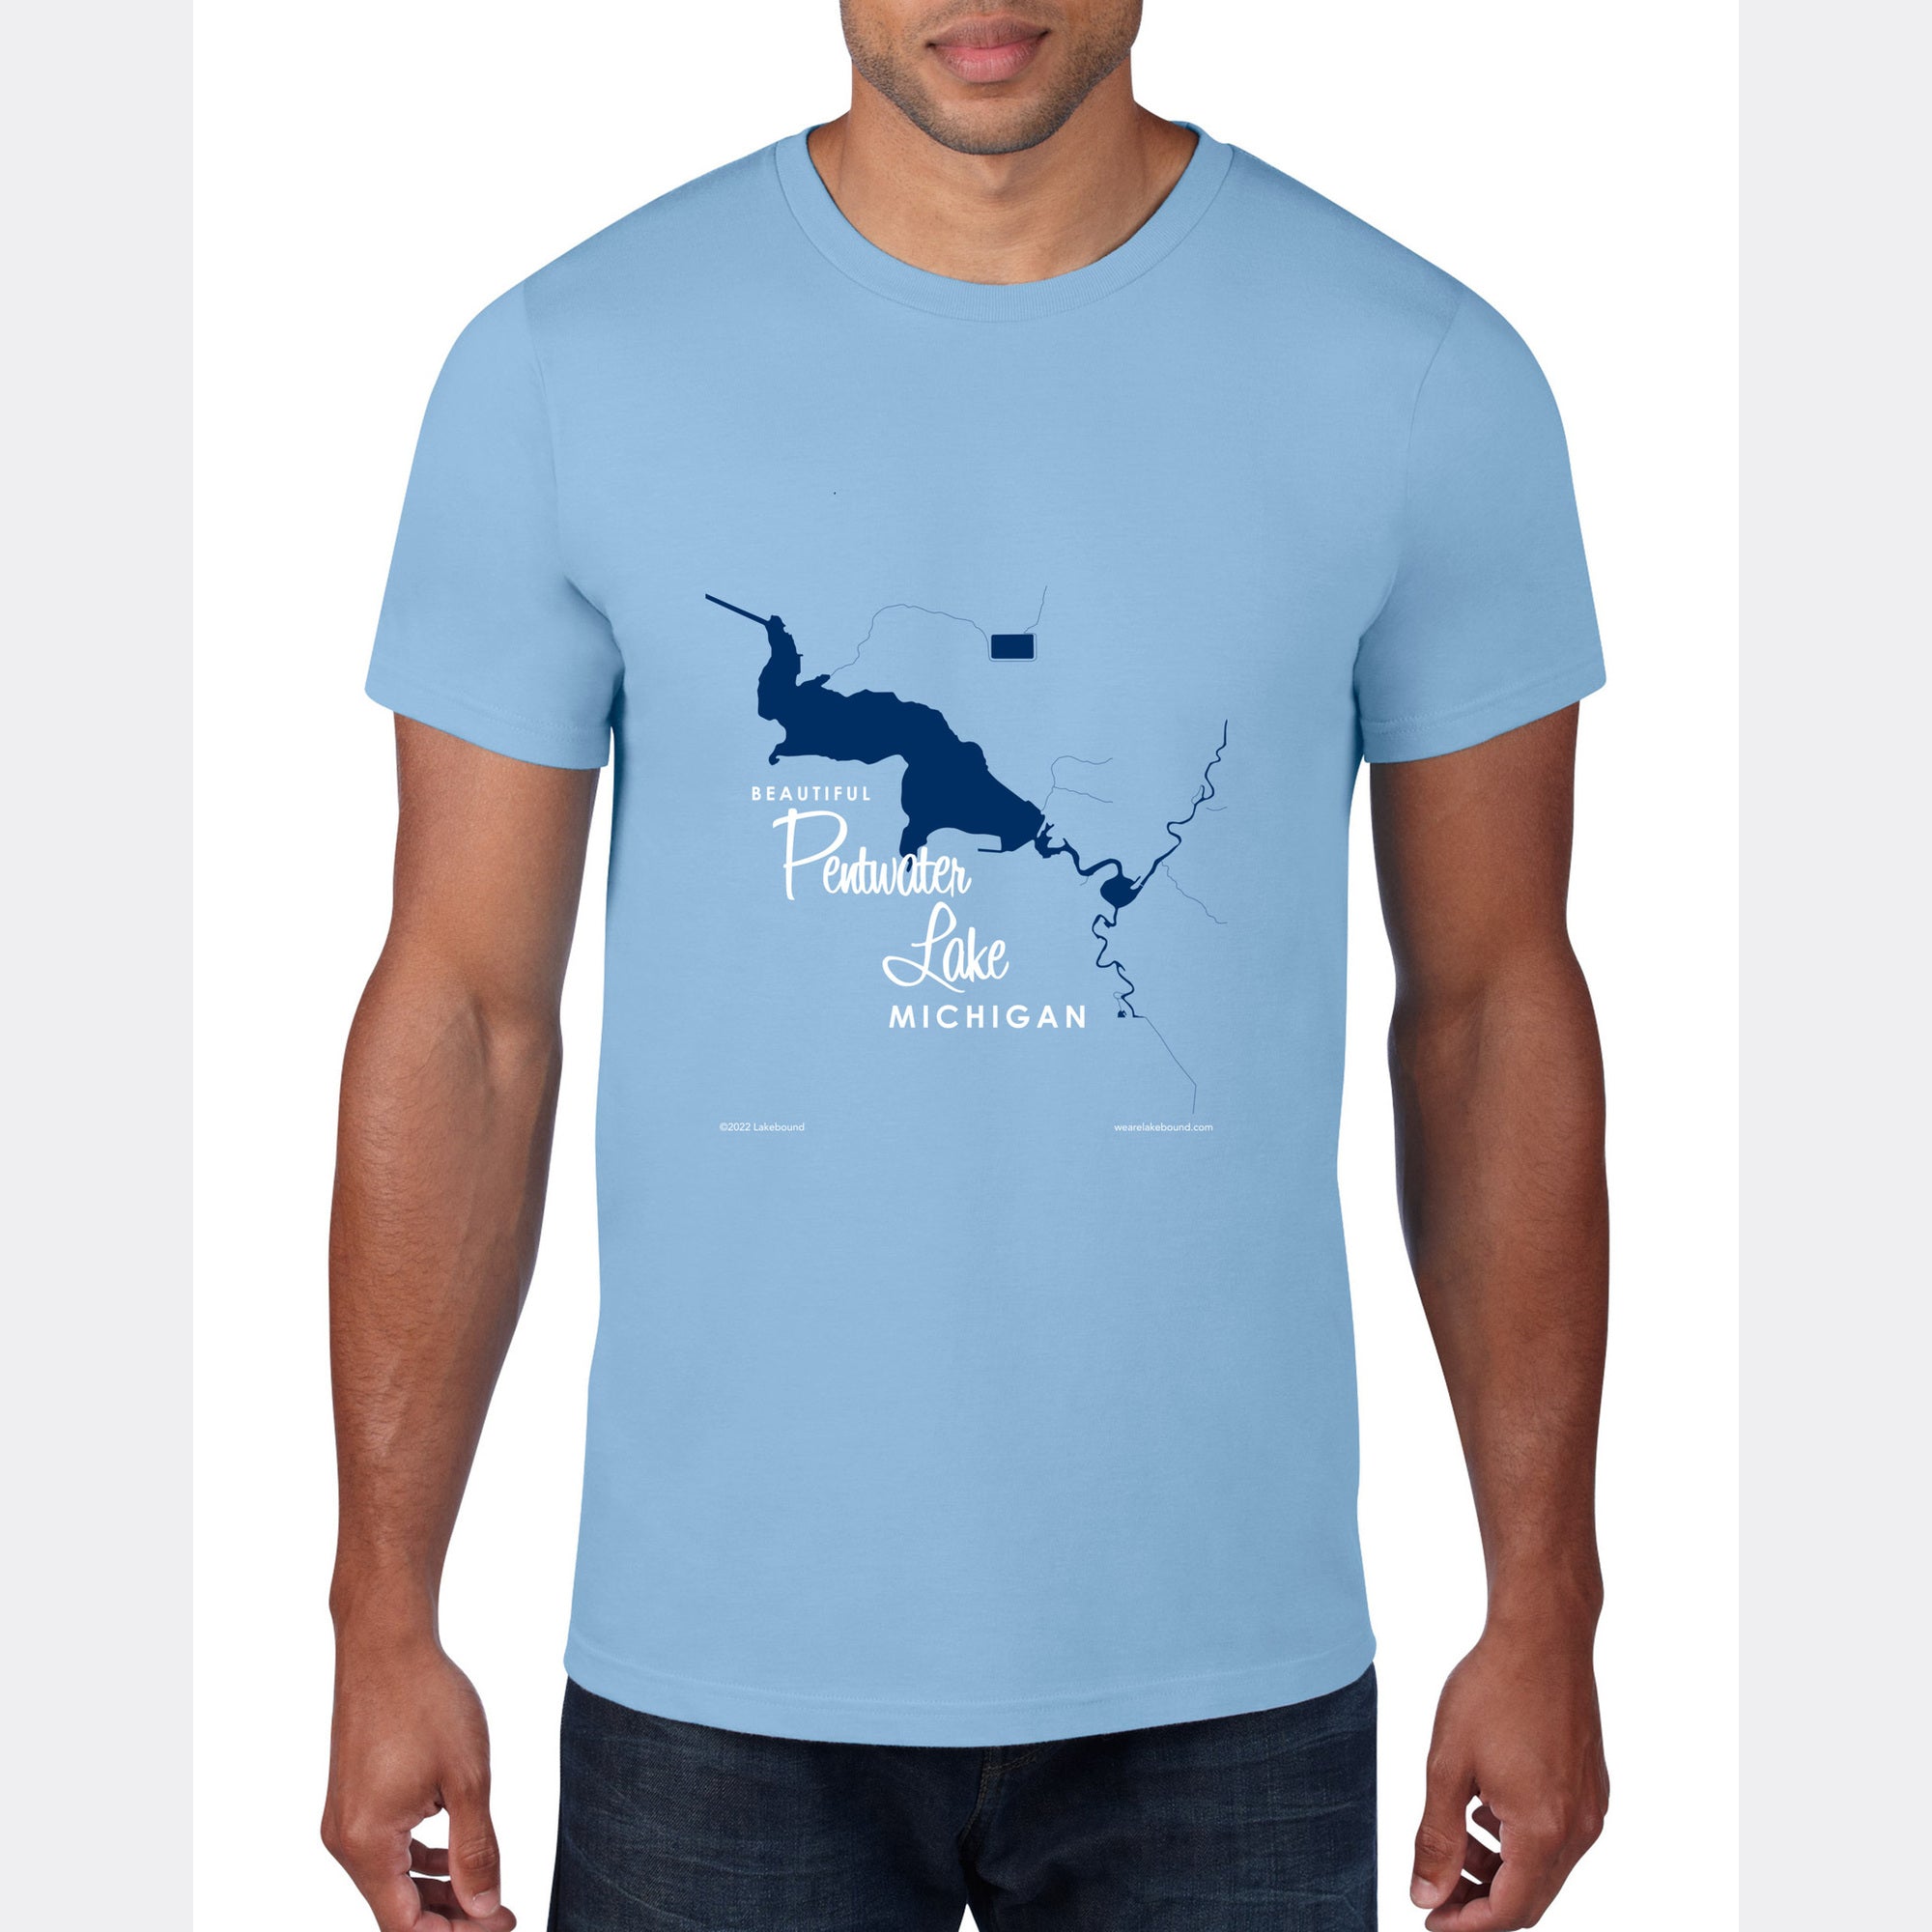 Pentwater Lake Michigan, T-Shirt